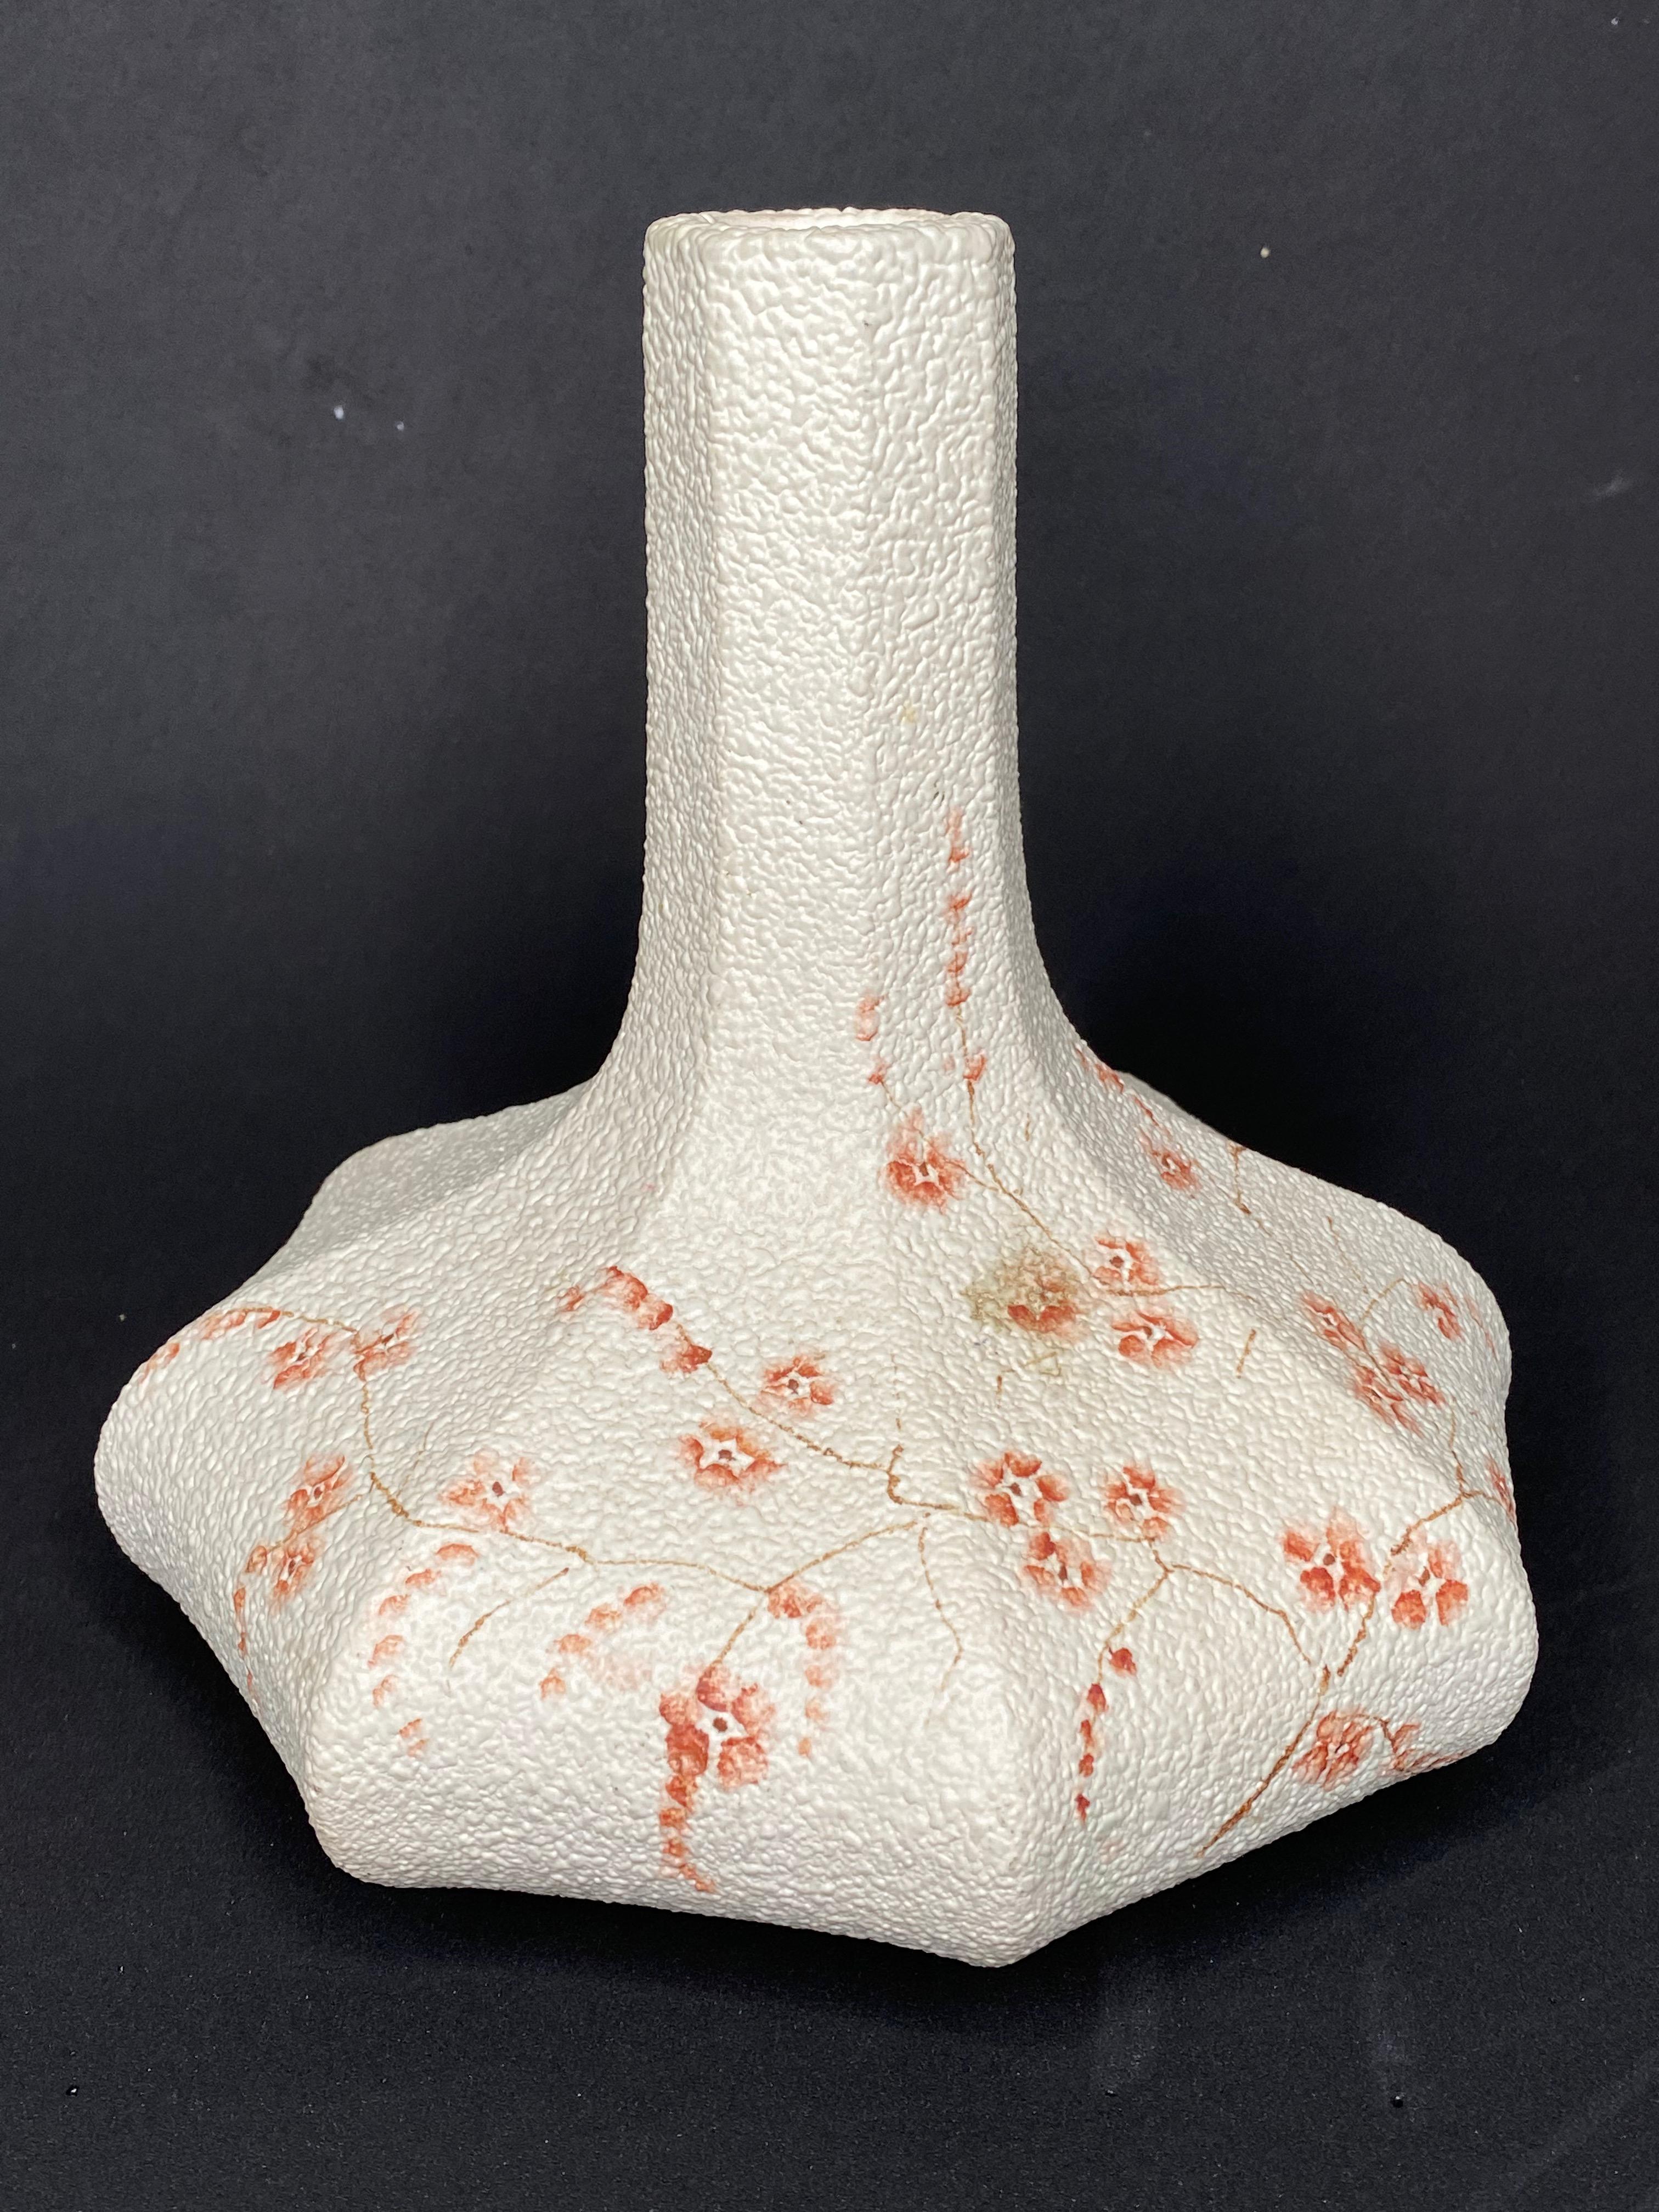 Un étonnant vase en poterie d'art du milieu du siècle dernier, fabriqué à San Marino, en Italie, dans les années 1970. Le vase est en très bon état, sans éclats, ni fissures, ni morsures de puces. Une belle addition à n'importe quelle pièce.